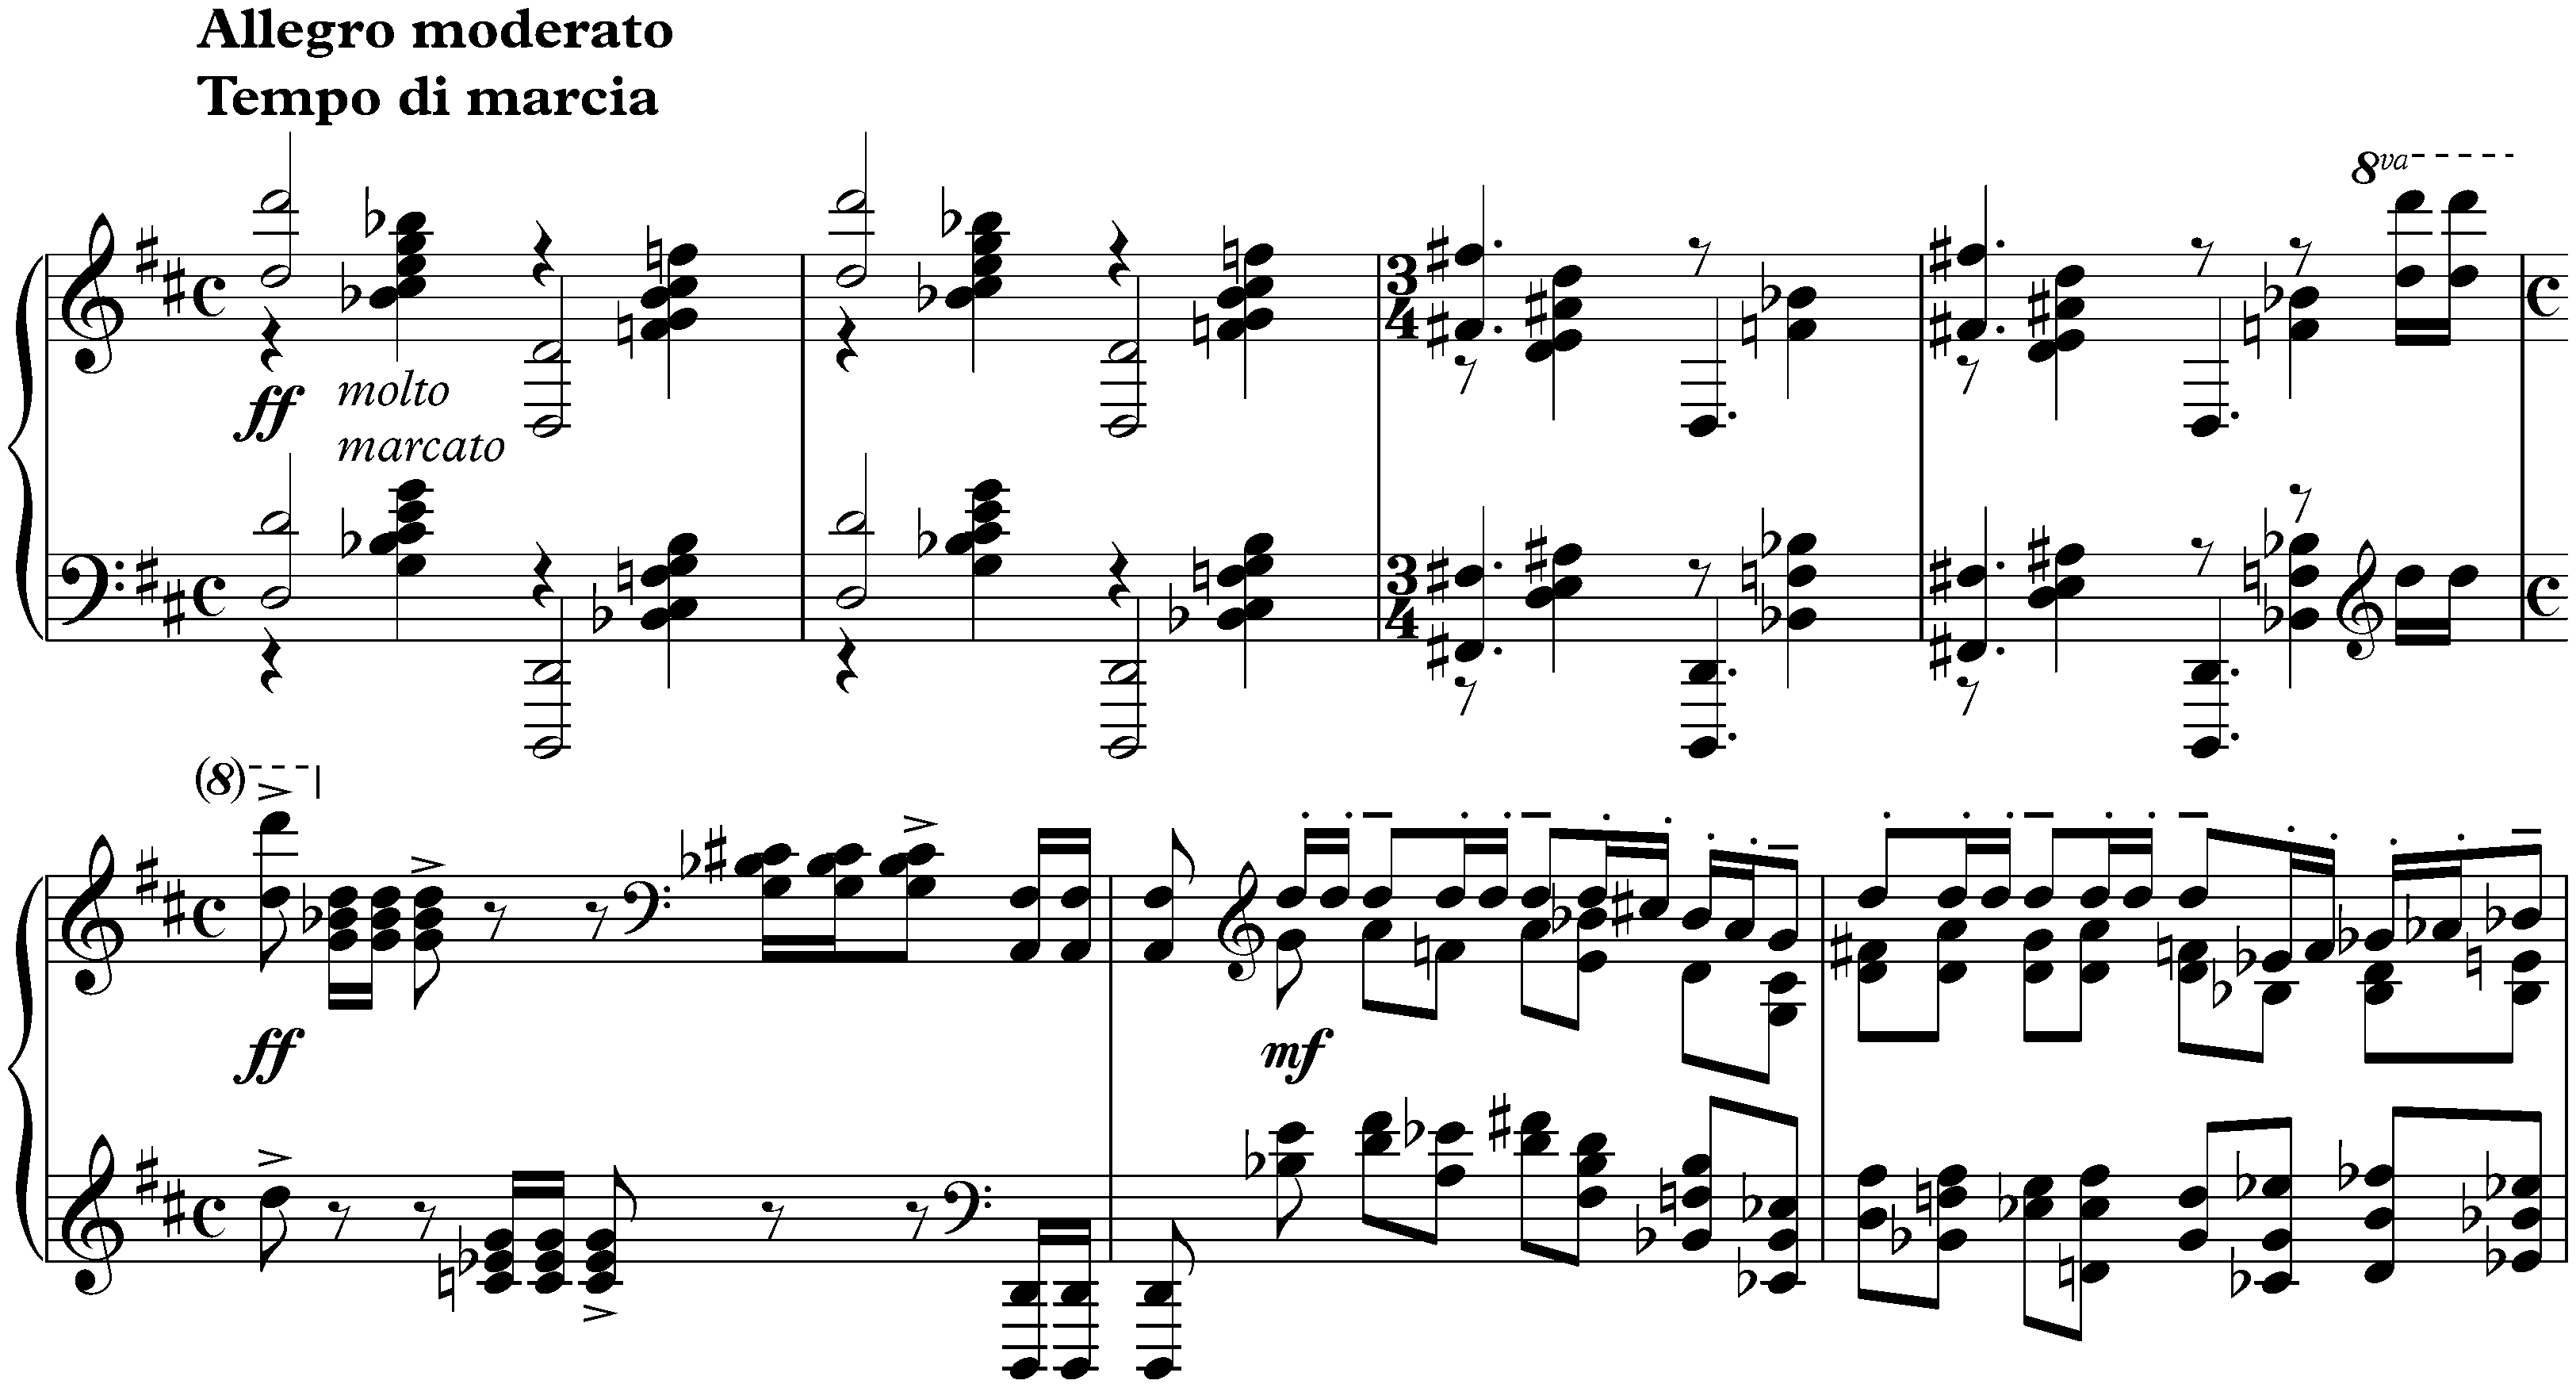 Études-tableaux, op. 39; 9. D major